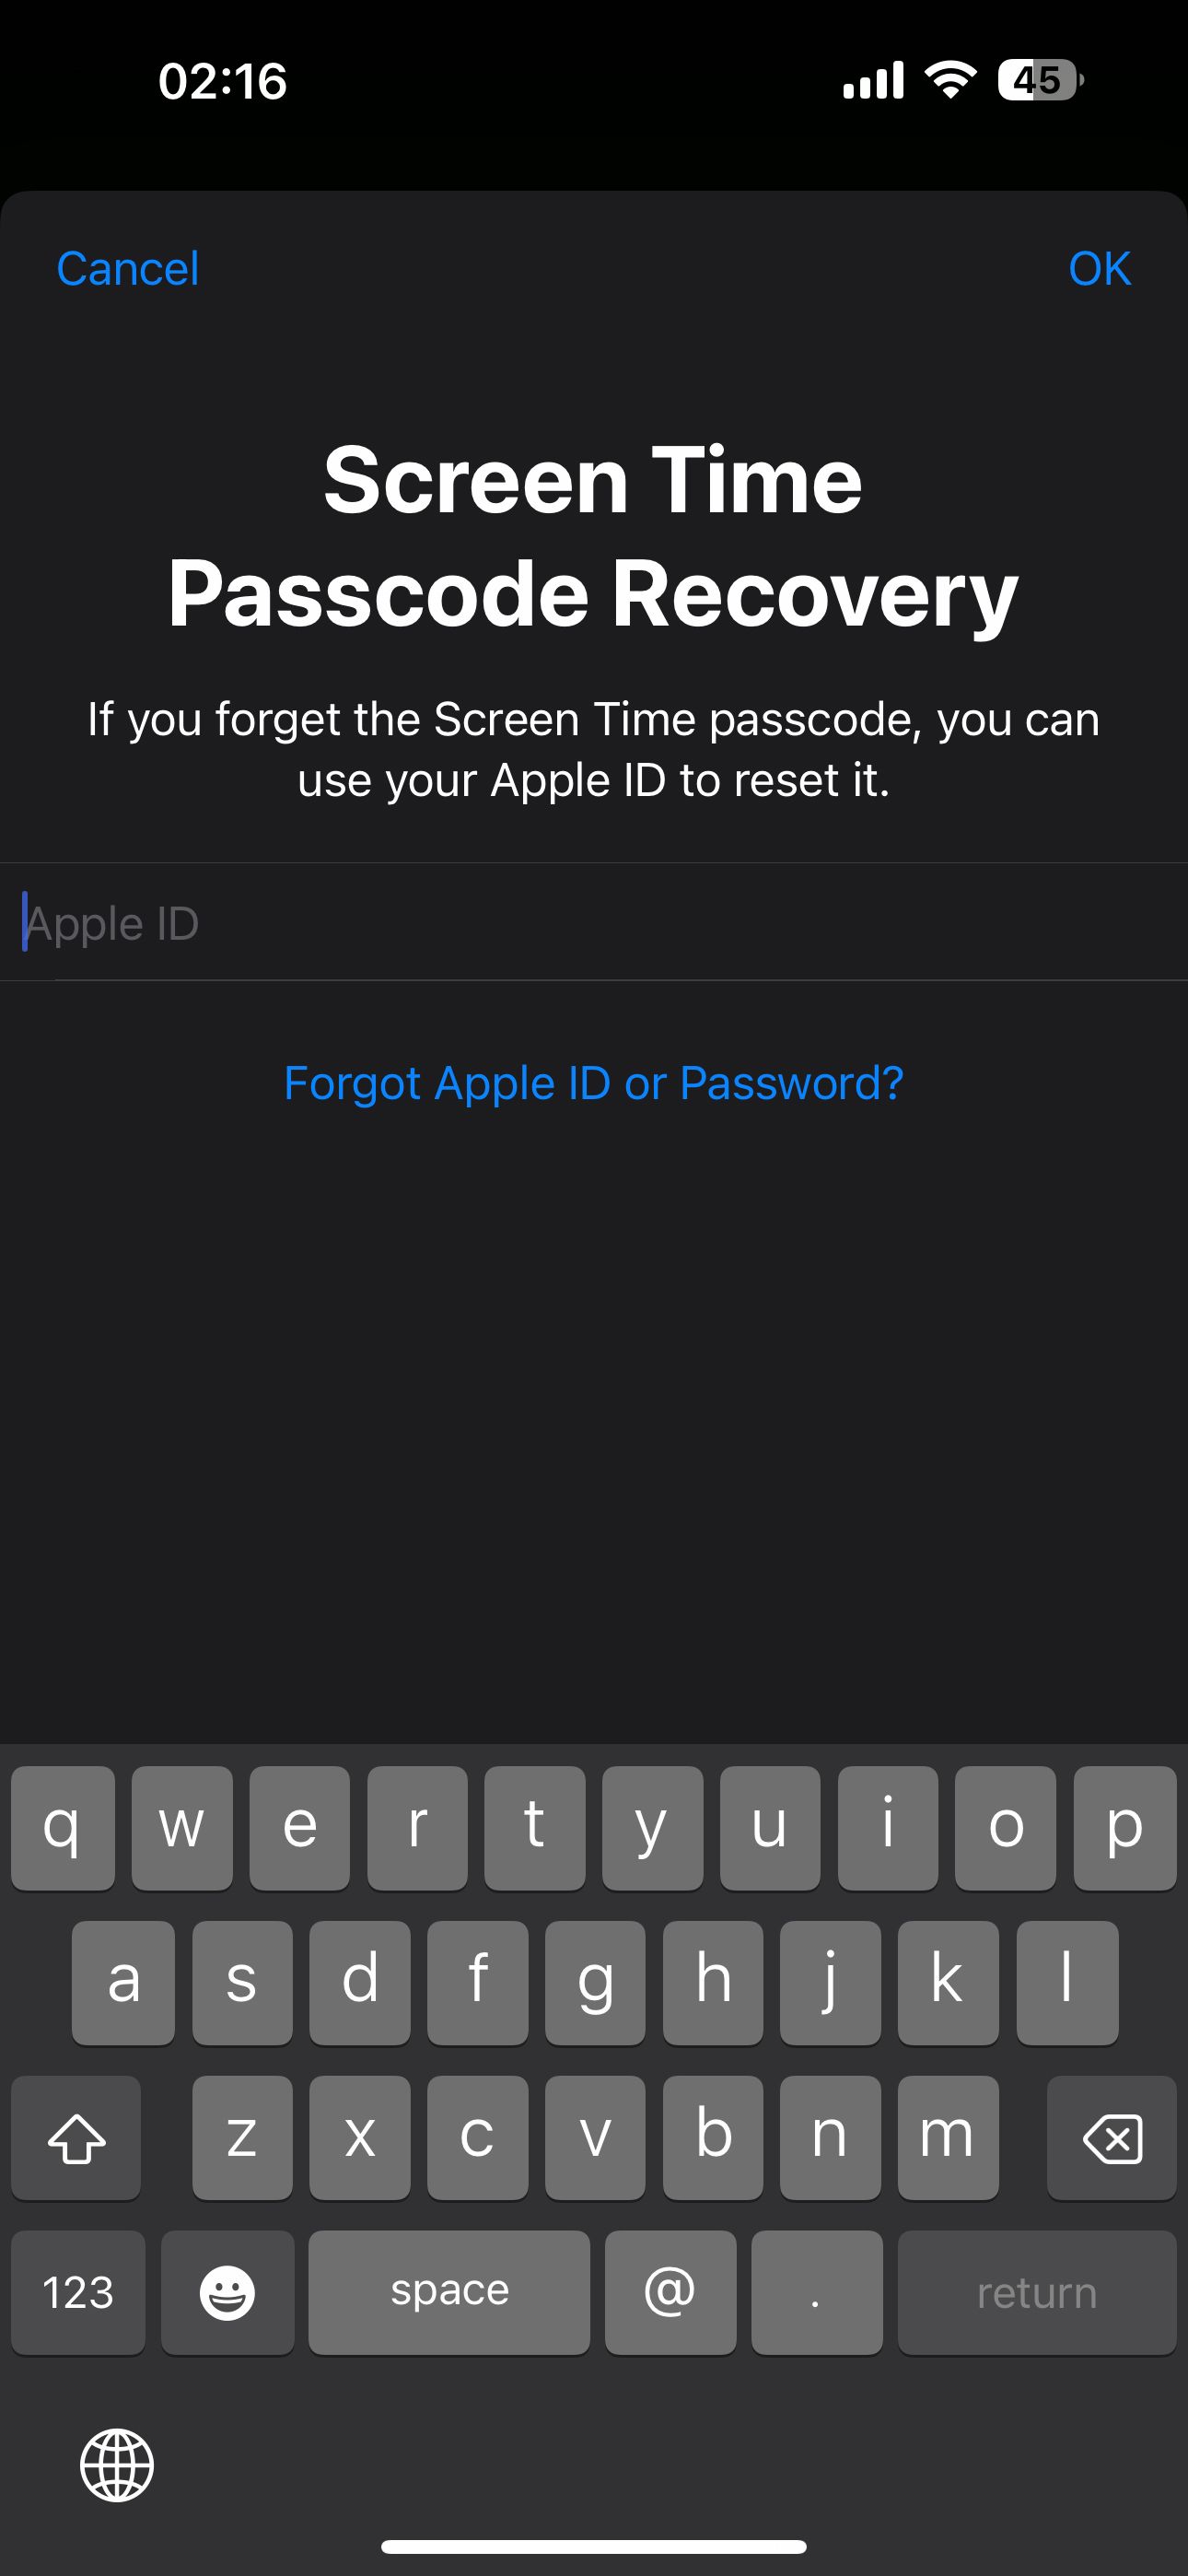 khôi phục mật khẩu screentime của bạn